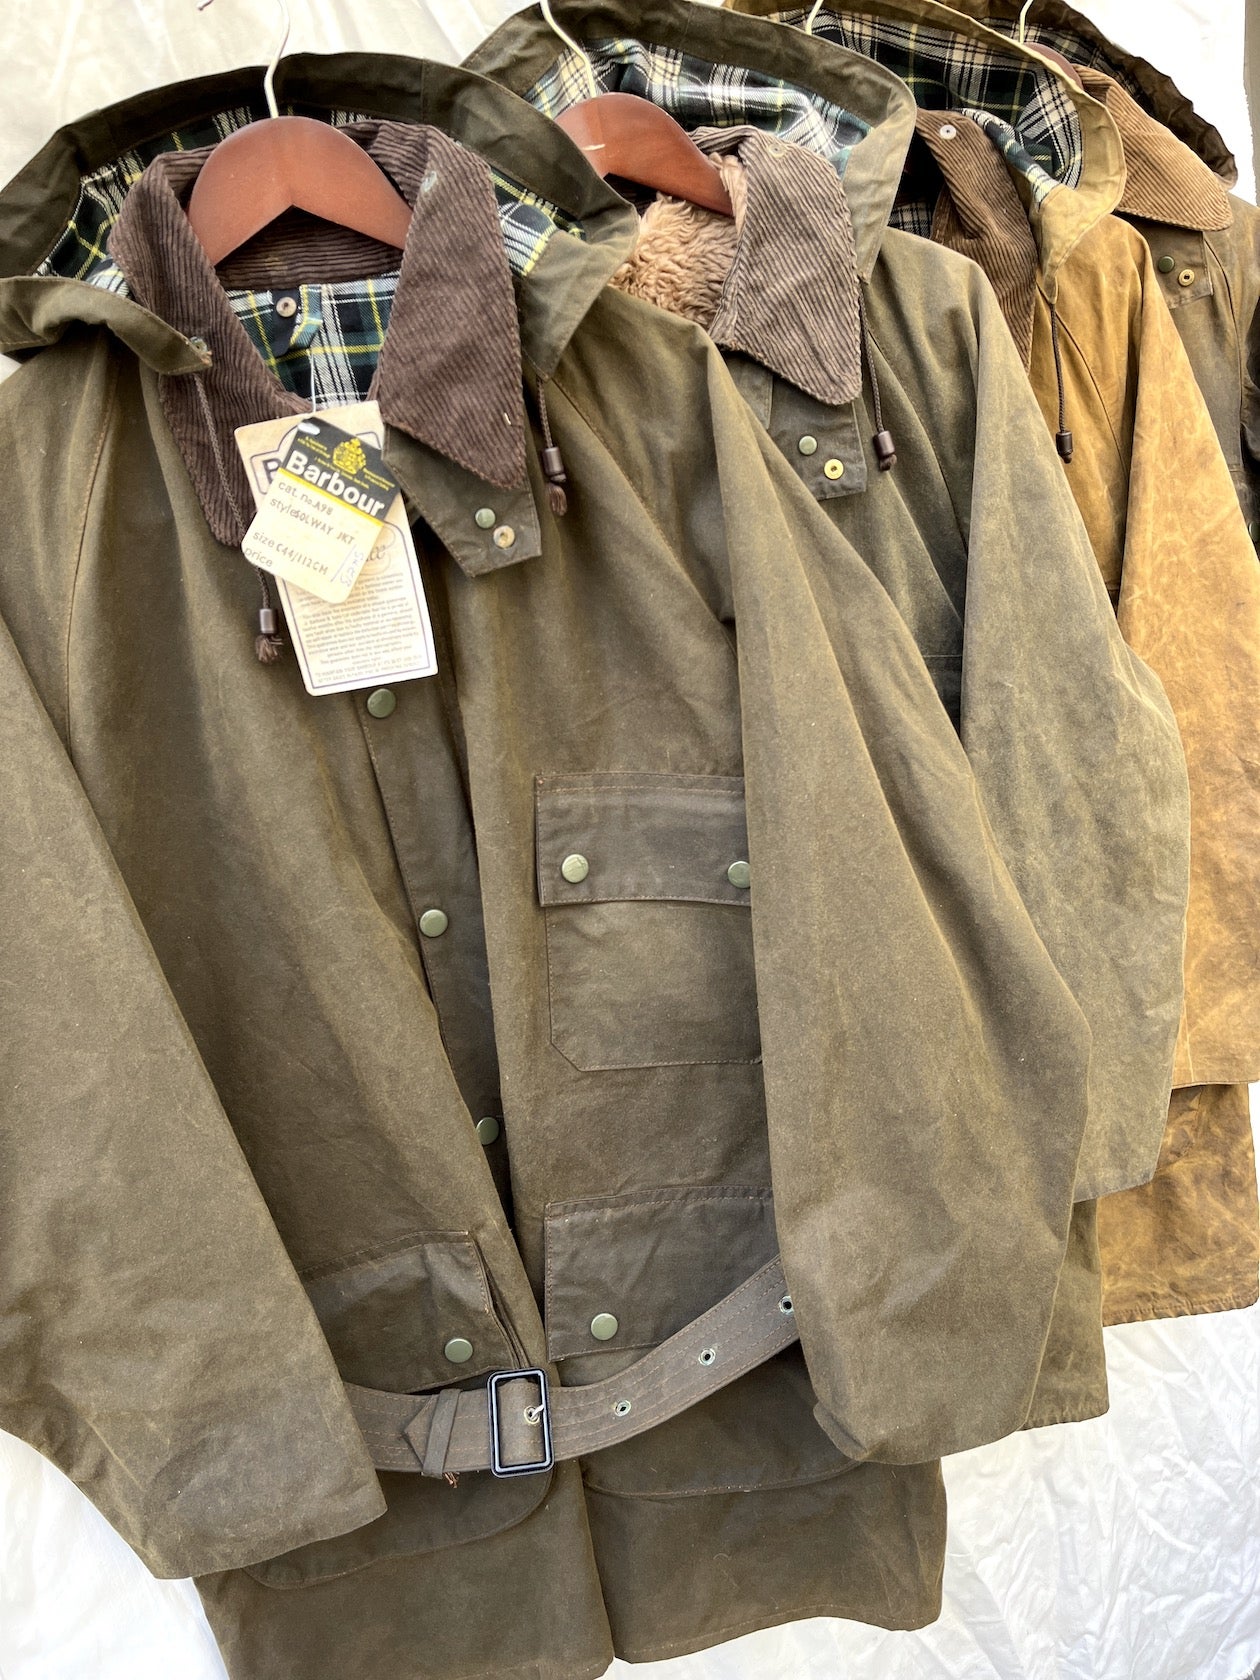 程度◎ 珍個体 1940's M-1943 “field jacket“ | eclipseseal.com